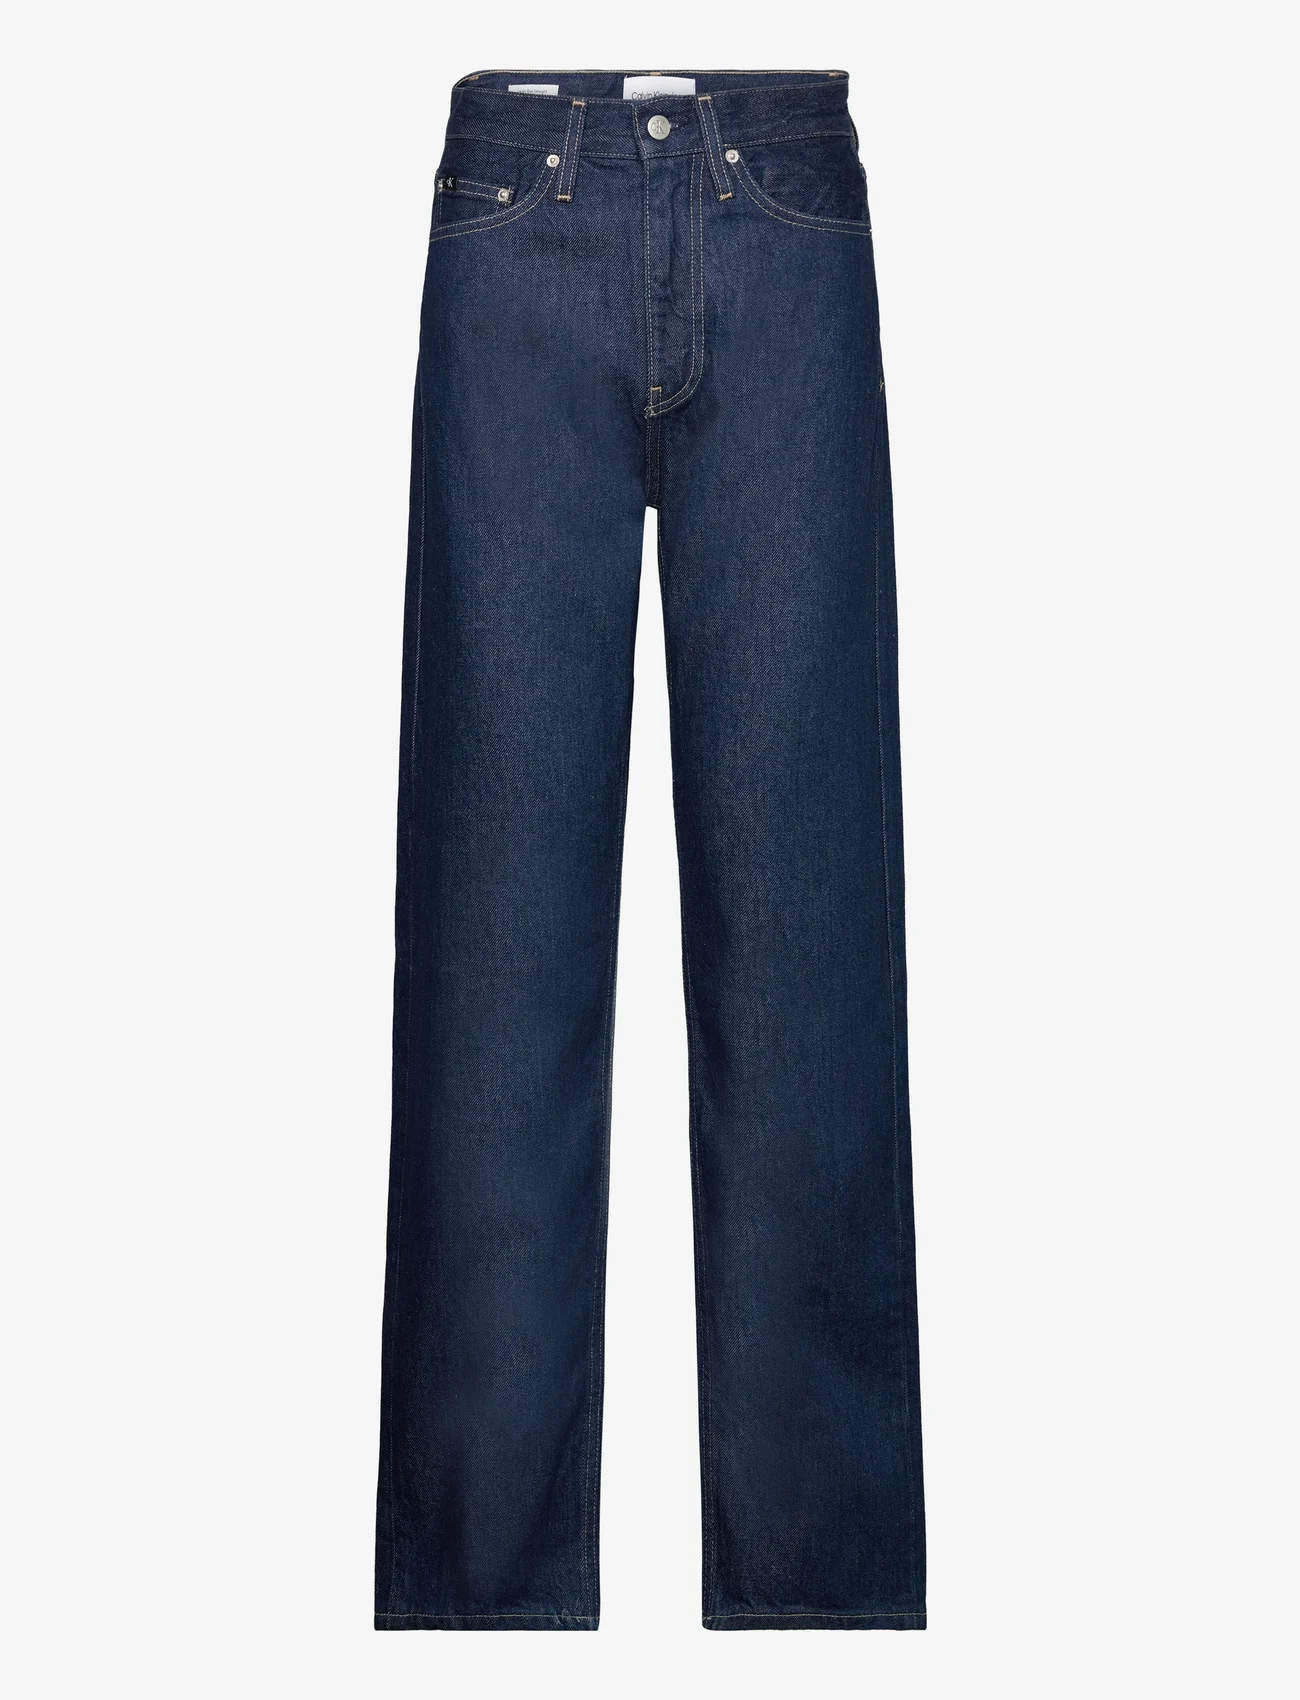 Calvin Klein Jeans - HIGH RISE STRAIGHT - tiesaus kirpimo džinsai - denim rinse - 0